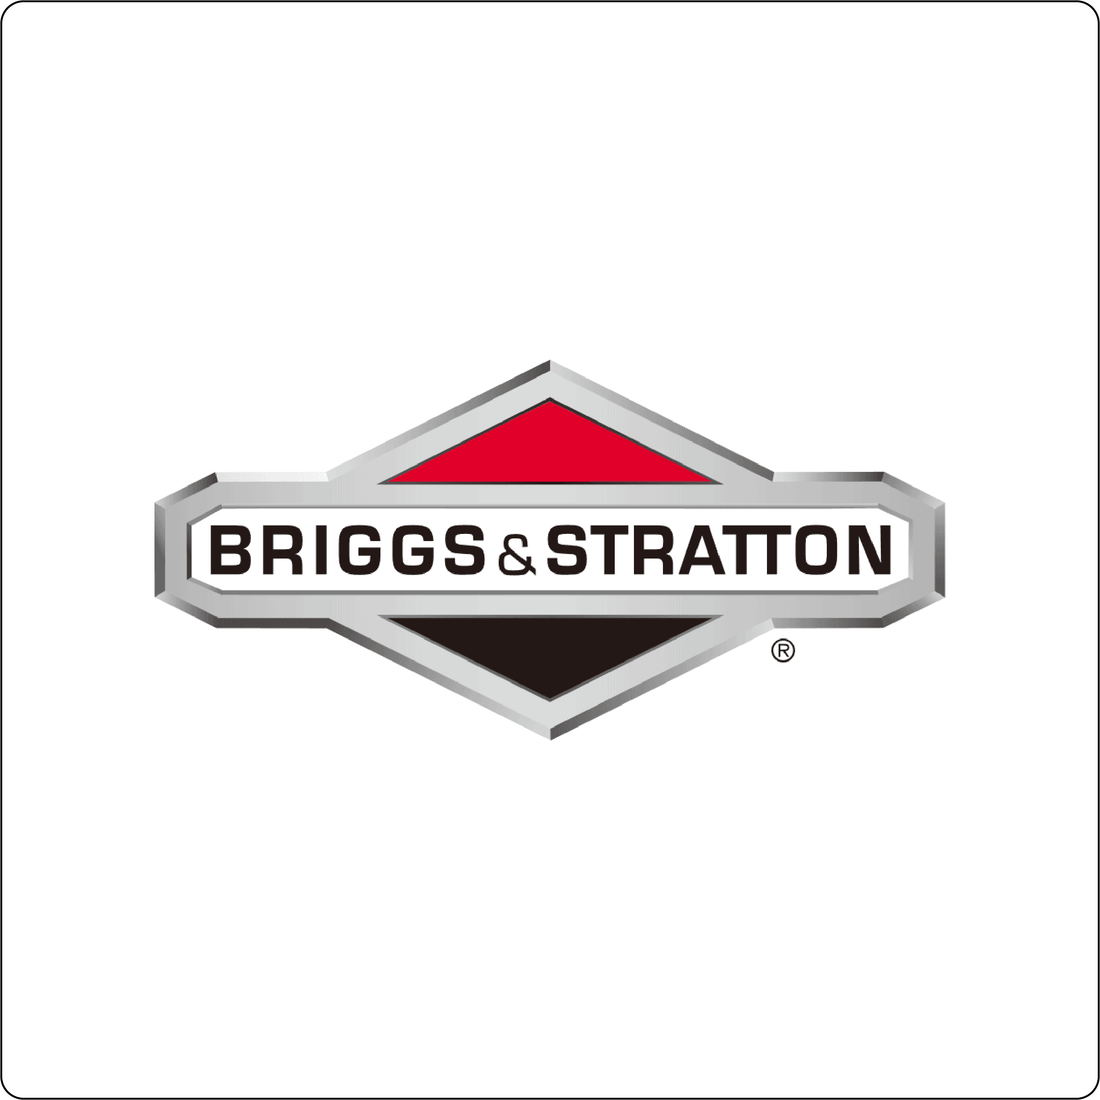  Briggs & Stratton®